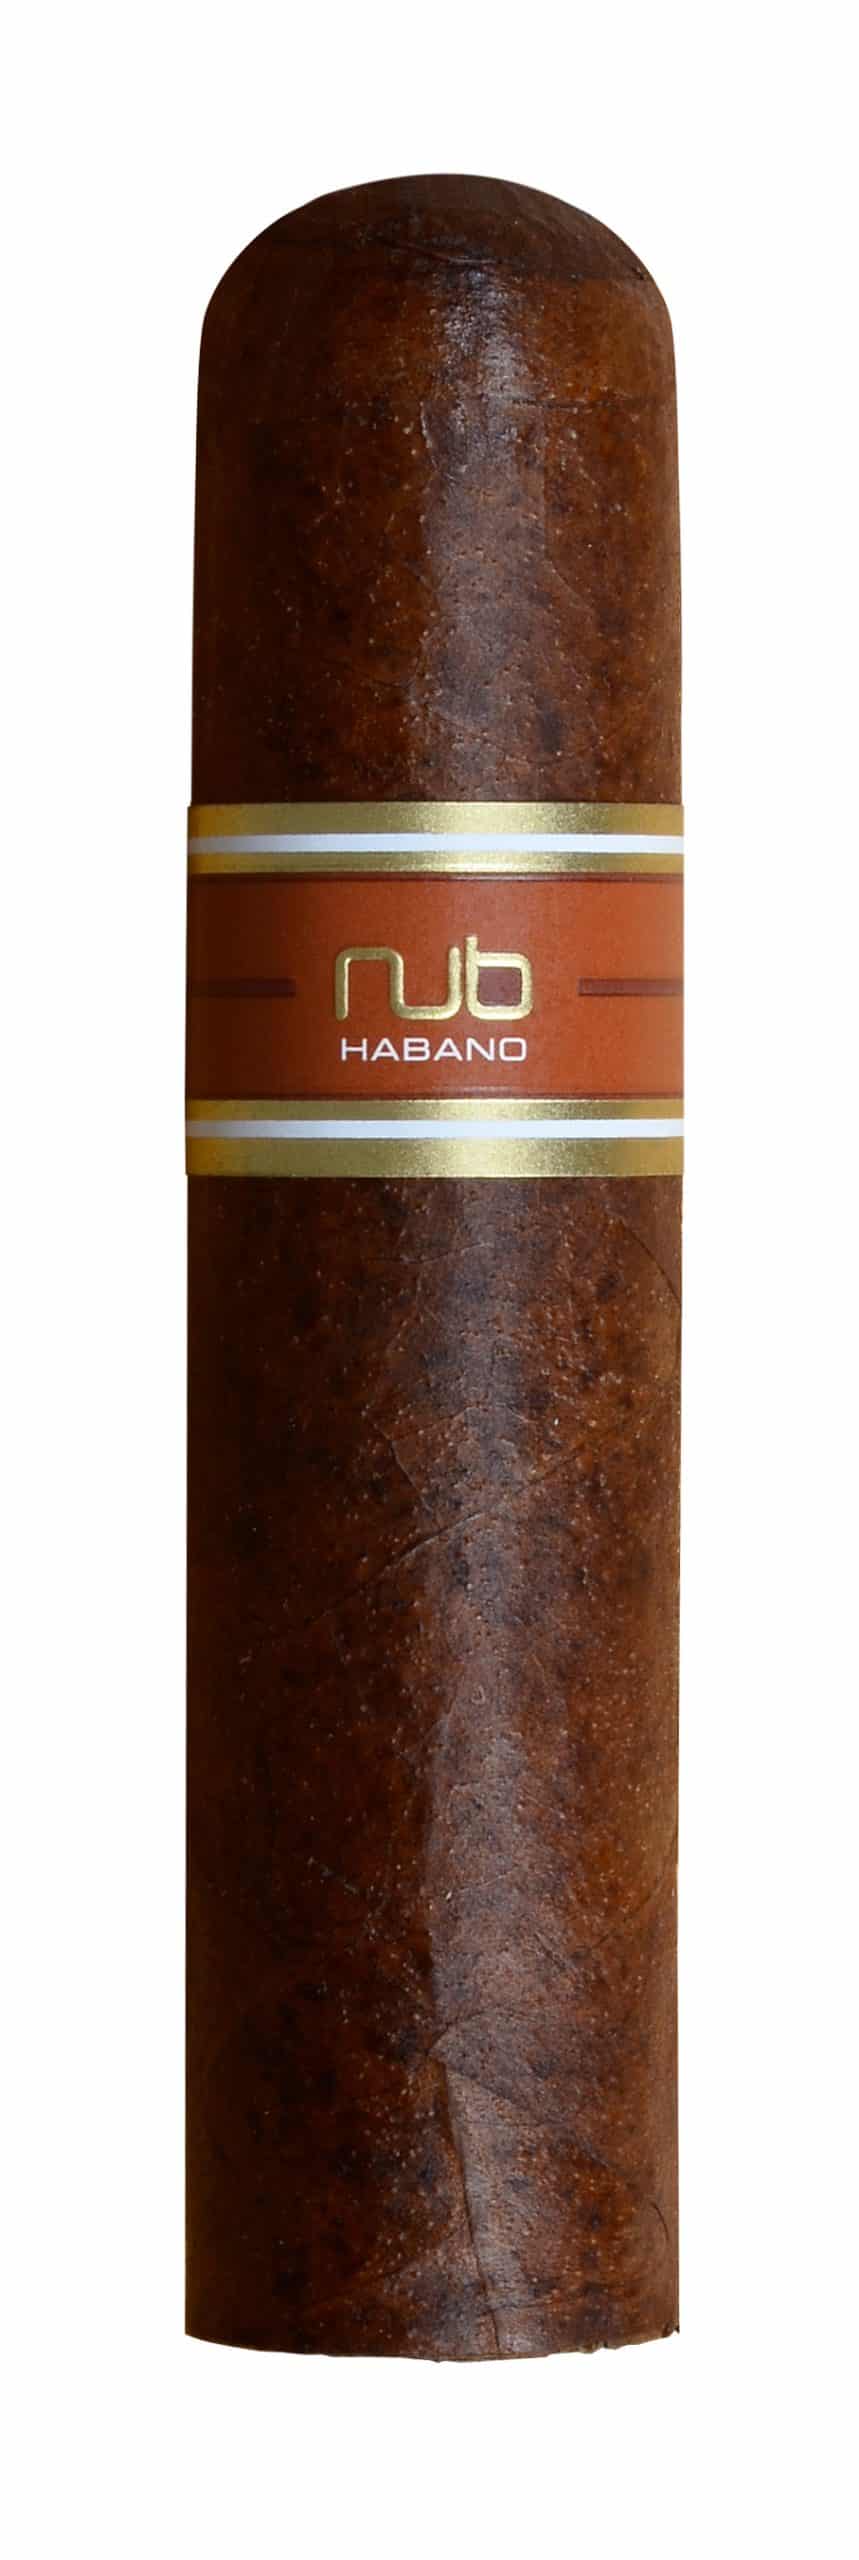 nub habano single cigar